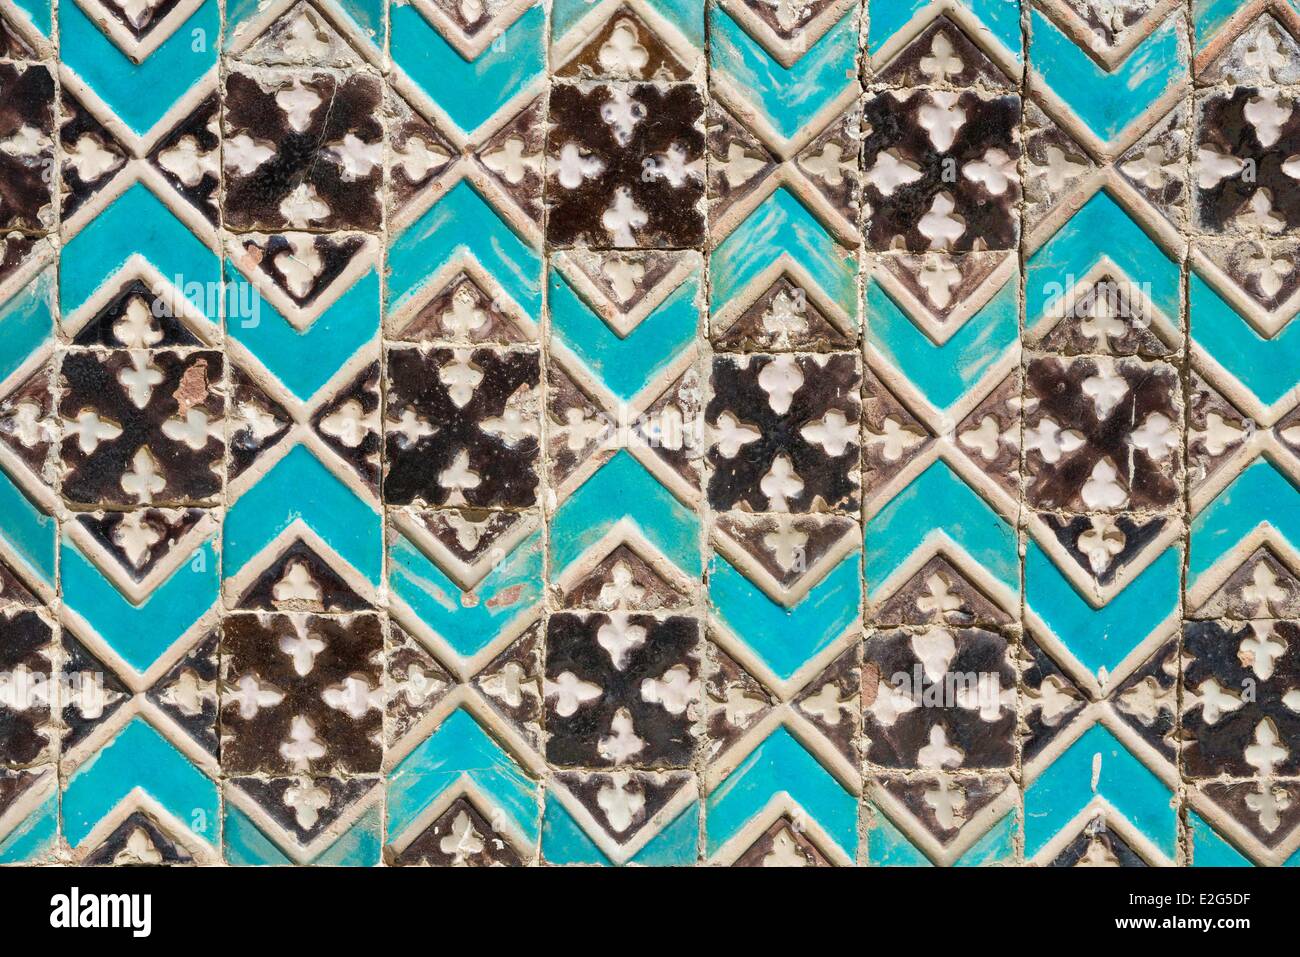 Usbekistan-Seidenstraße-Samarkand Weltkulturerbe von UNESCO Shah I Zinda Nekropole Mosaik detail Stockfoto